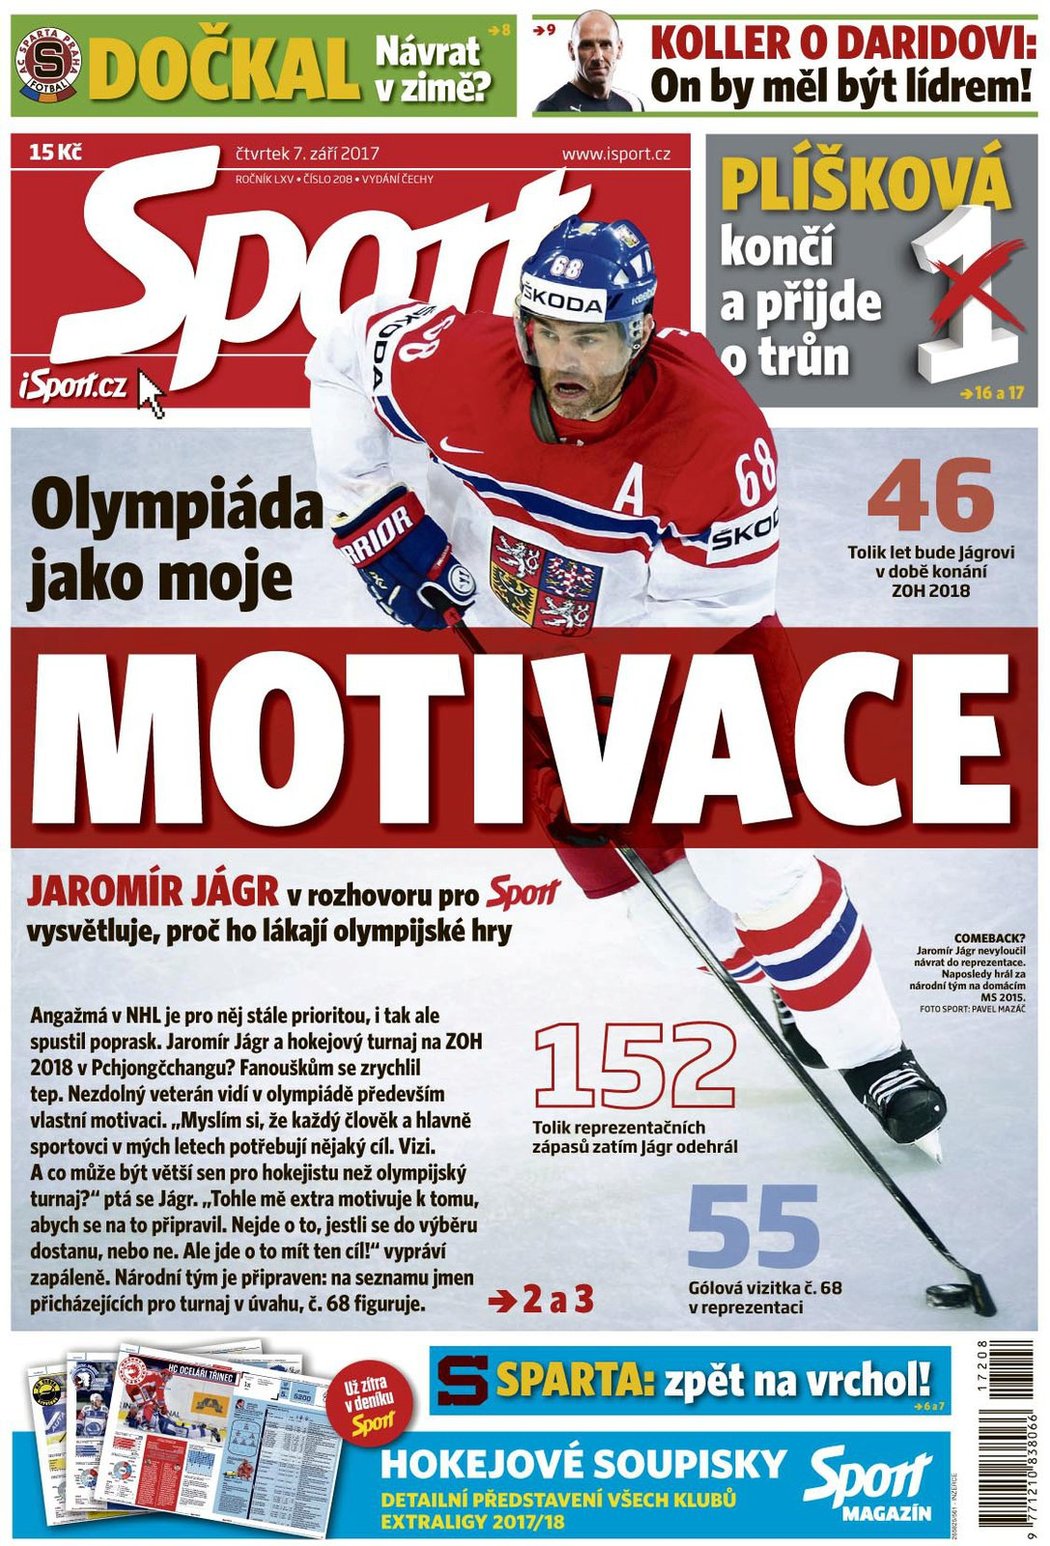 Titulní strana čtvrtečního vydání deníku Sport